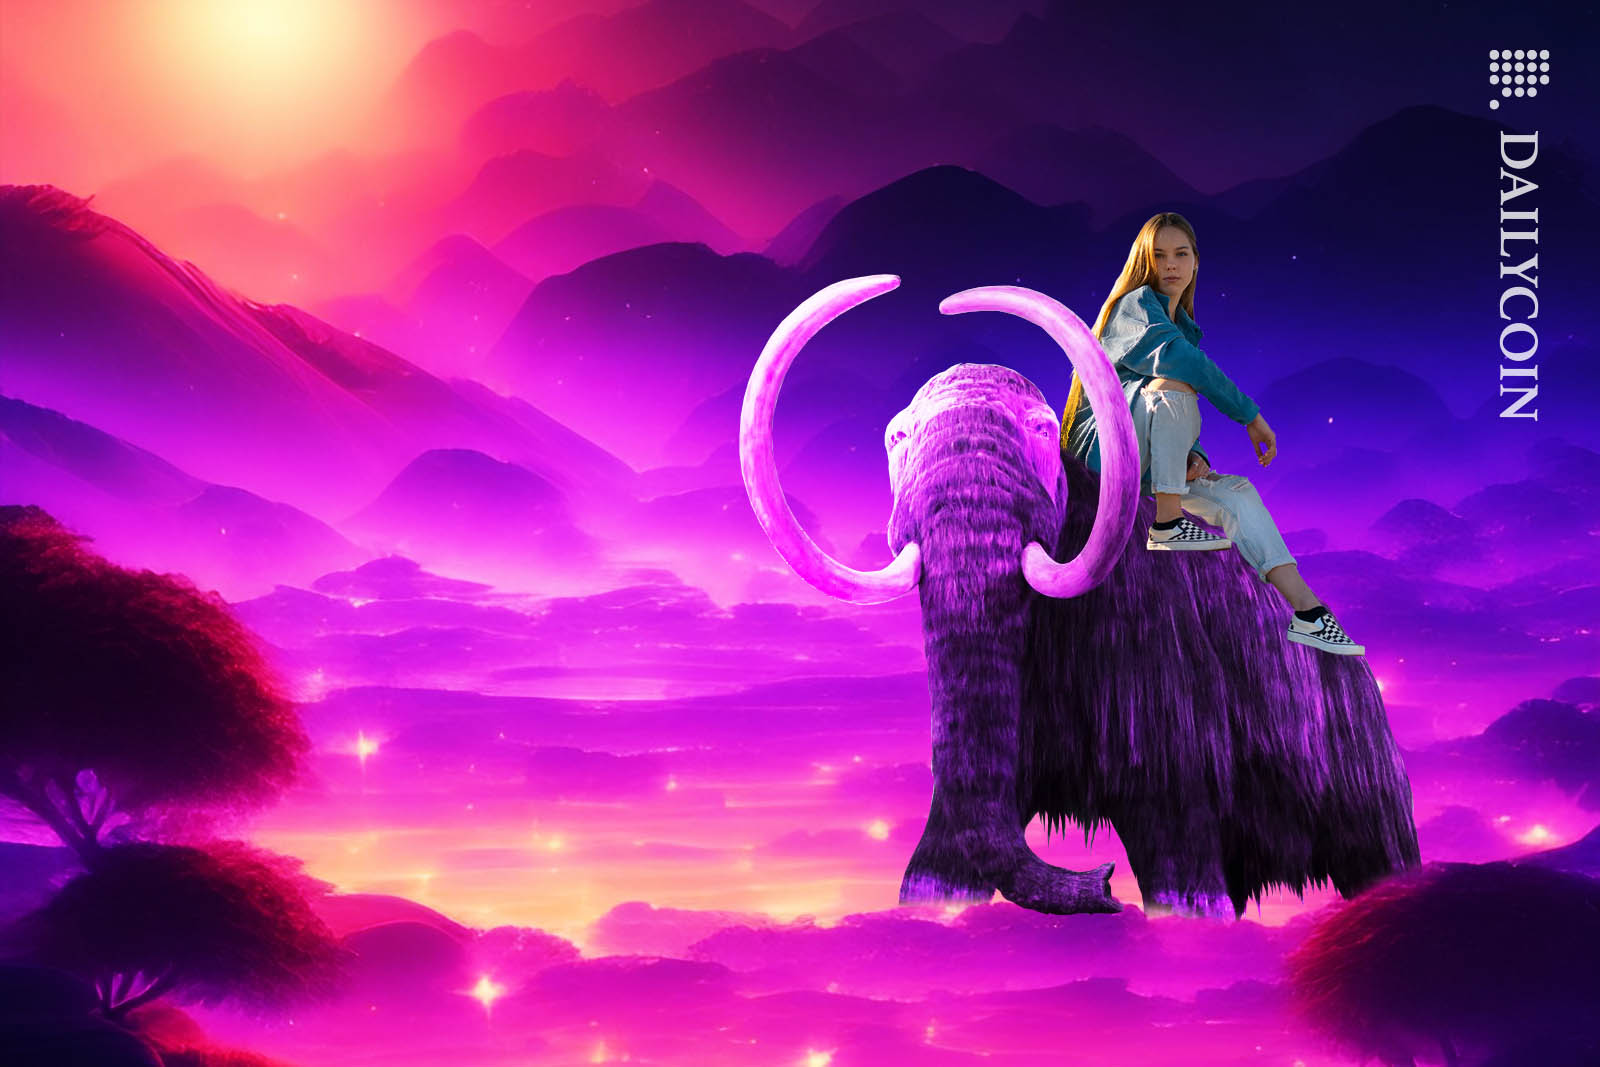 Girl riding a mastodon in an alien landscape.